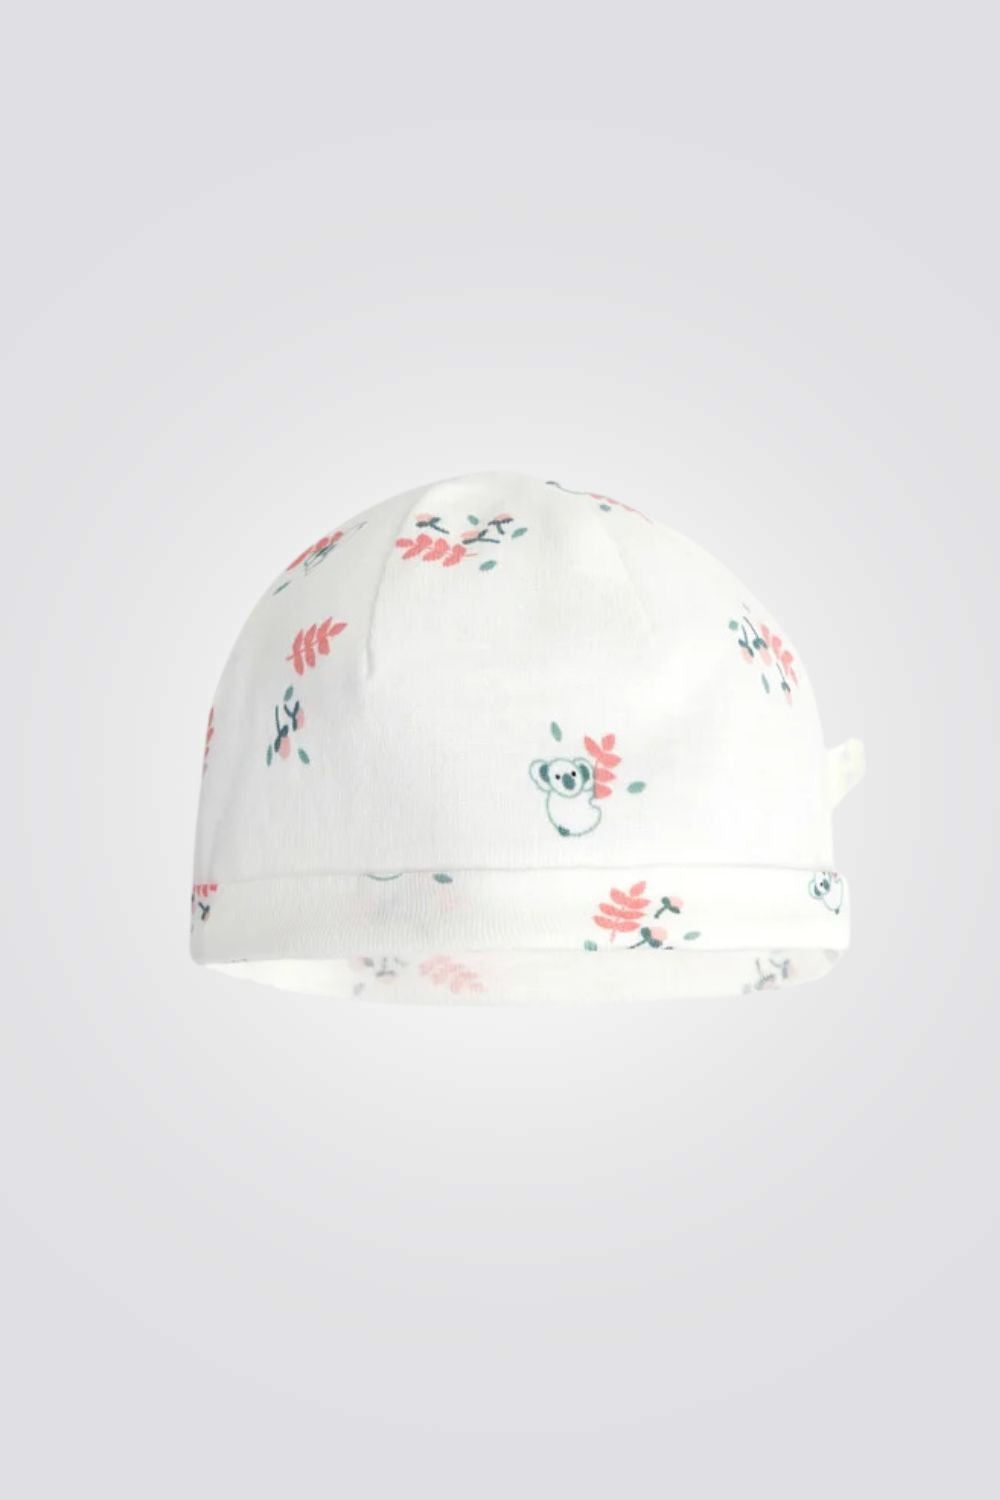 כובע לתינוקות בצבע לבן עם הדפס קואלה 